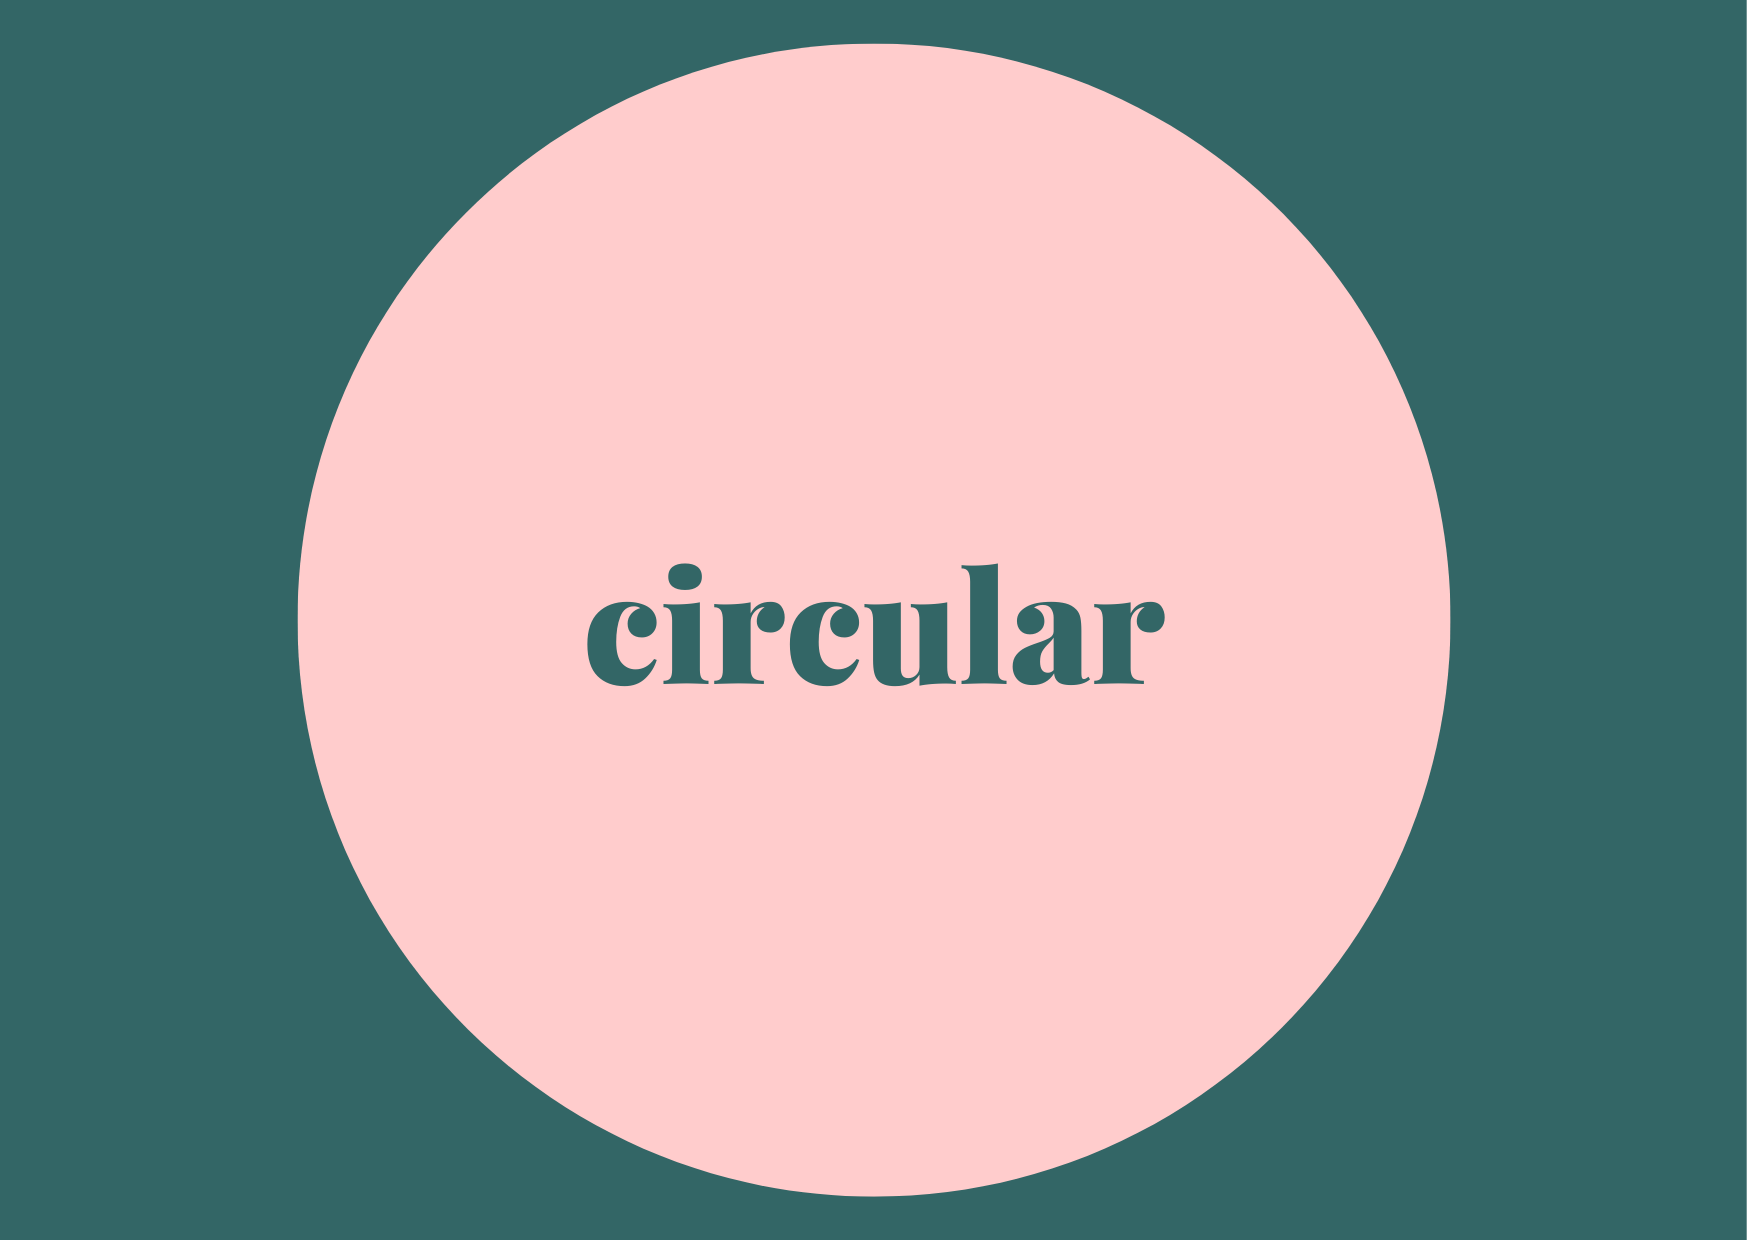 circular.png